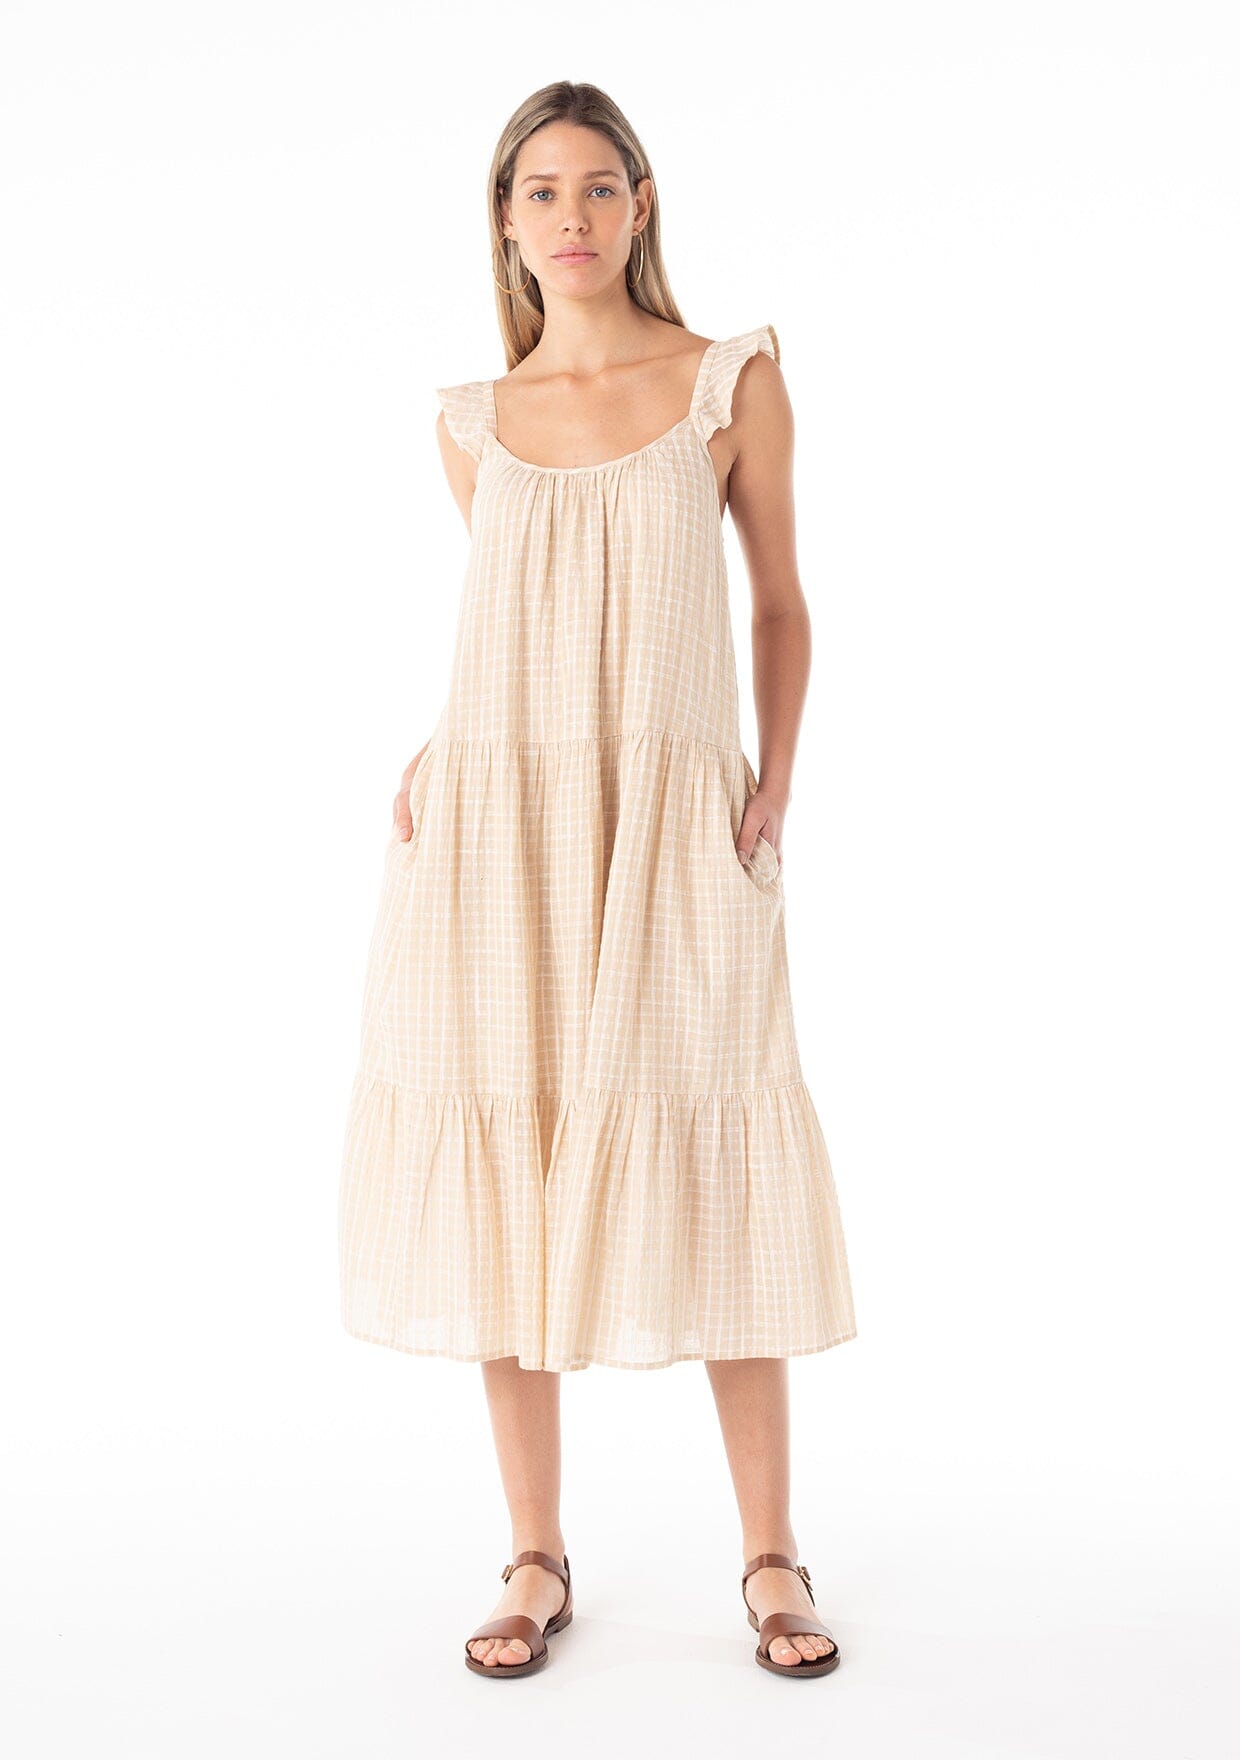 LOVESTITCH Dresses – Unique & Affordable Boho Dresses, Designed in